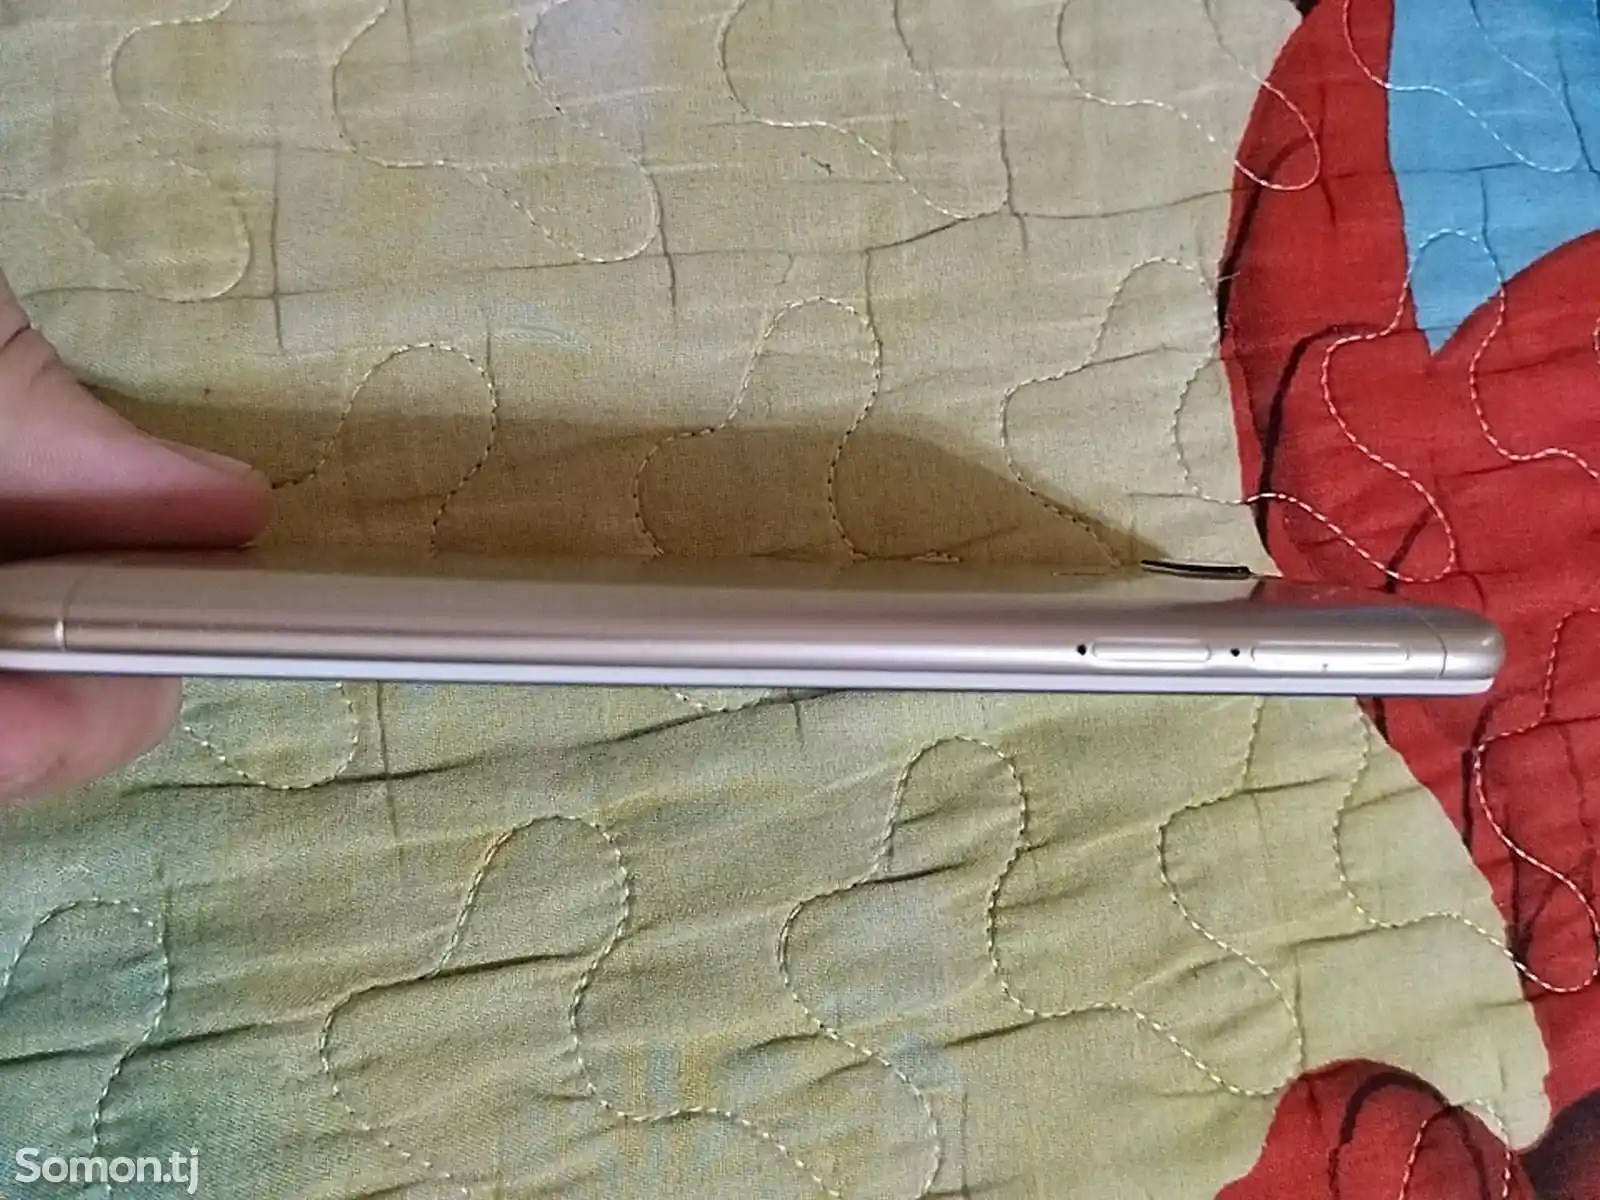 Xiaomi Redmi 6-4